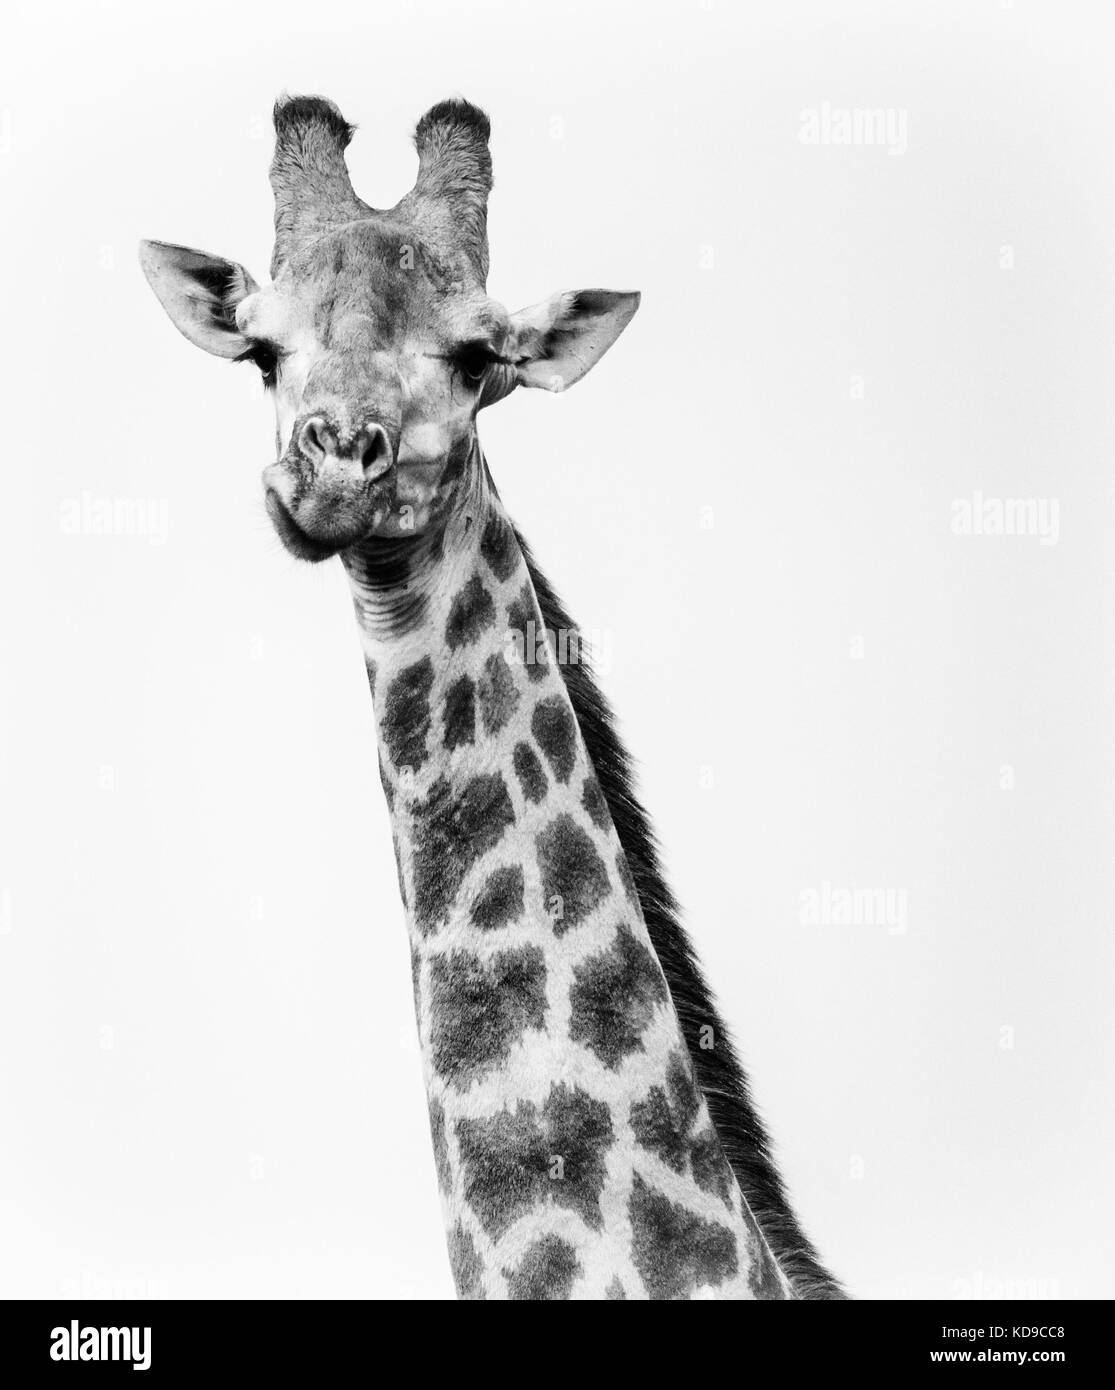 Unico Giraffe di guardare direttamente la fotocamera durante la masticazione. Alto contrasto bianco e nero Foto Stock